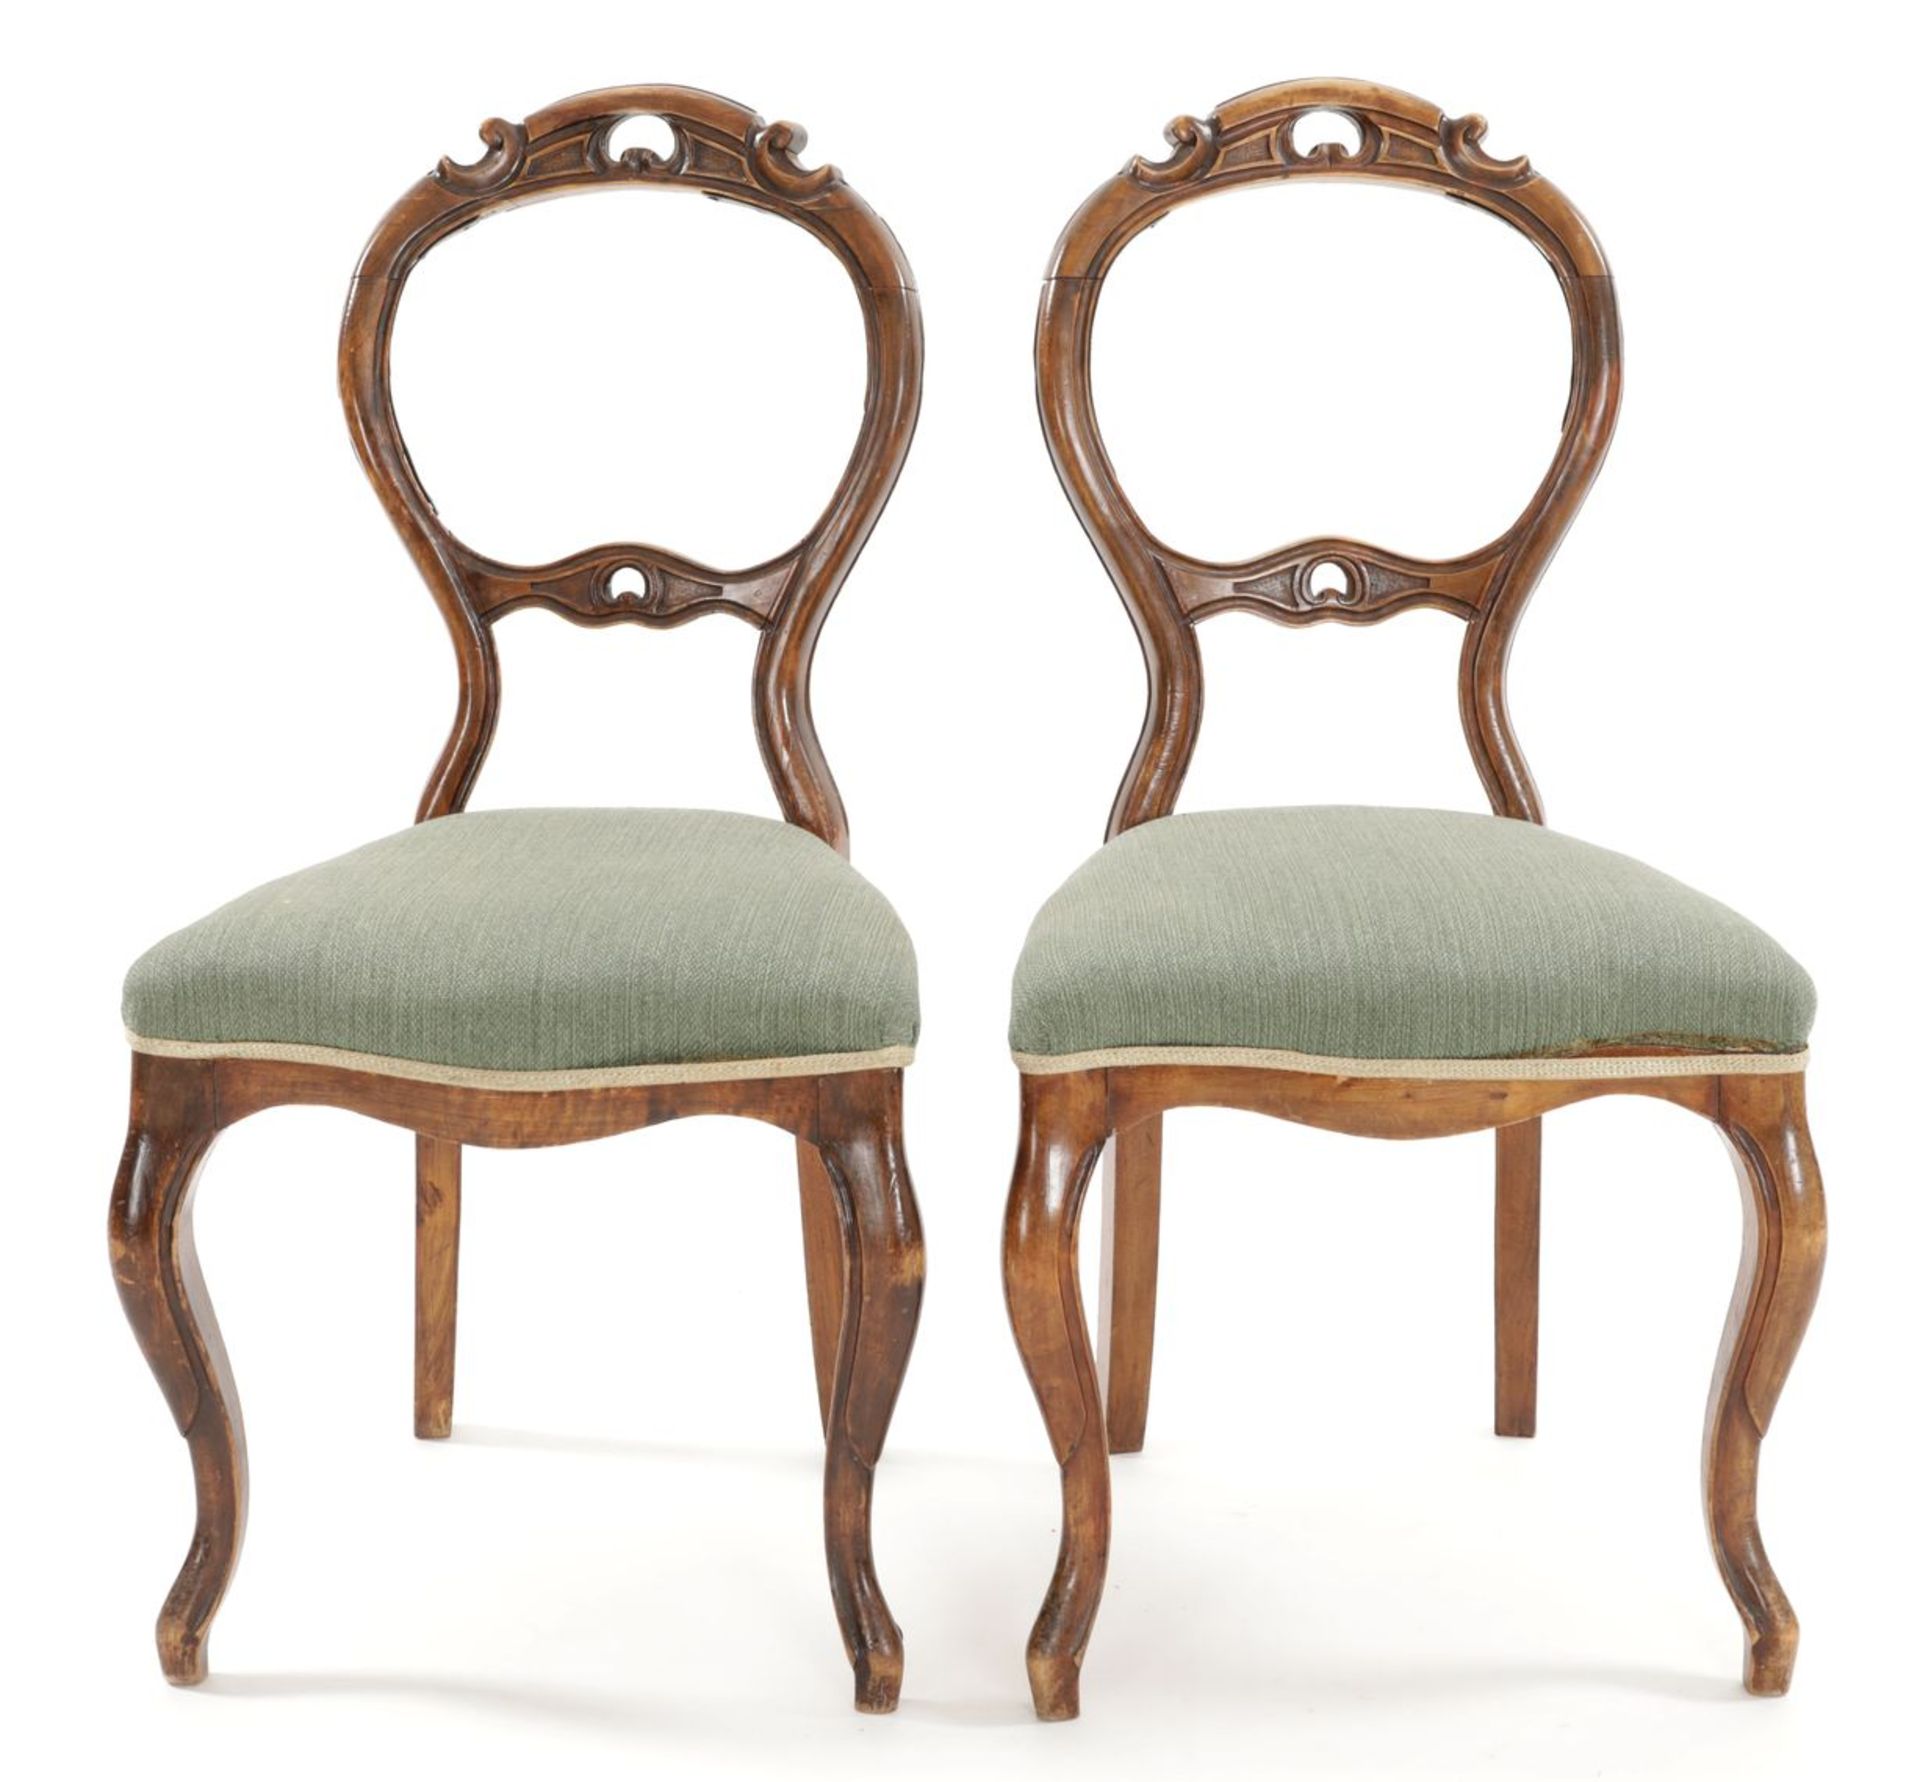 Paar viktorianische Stühle